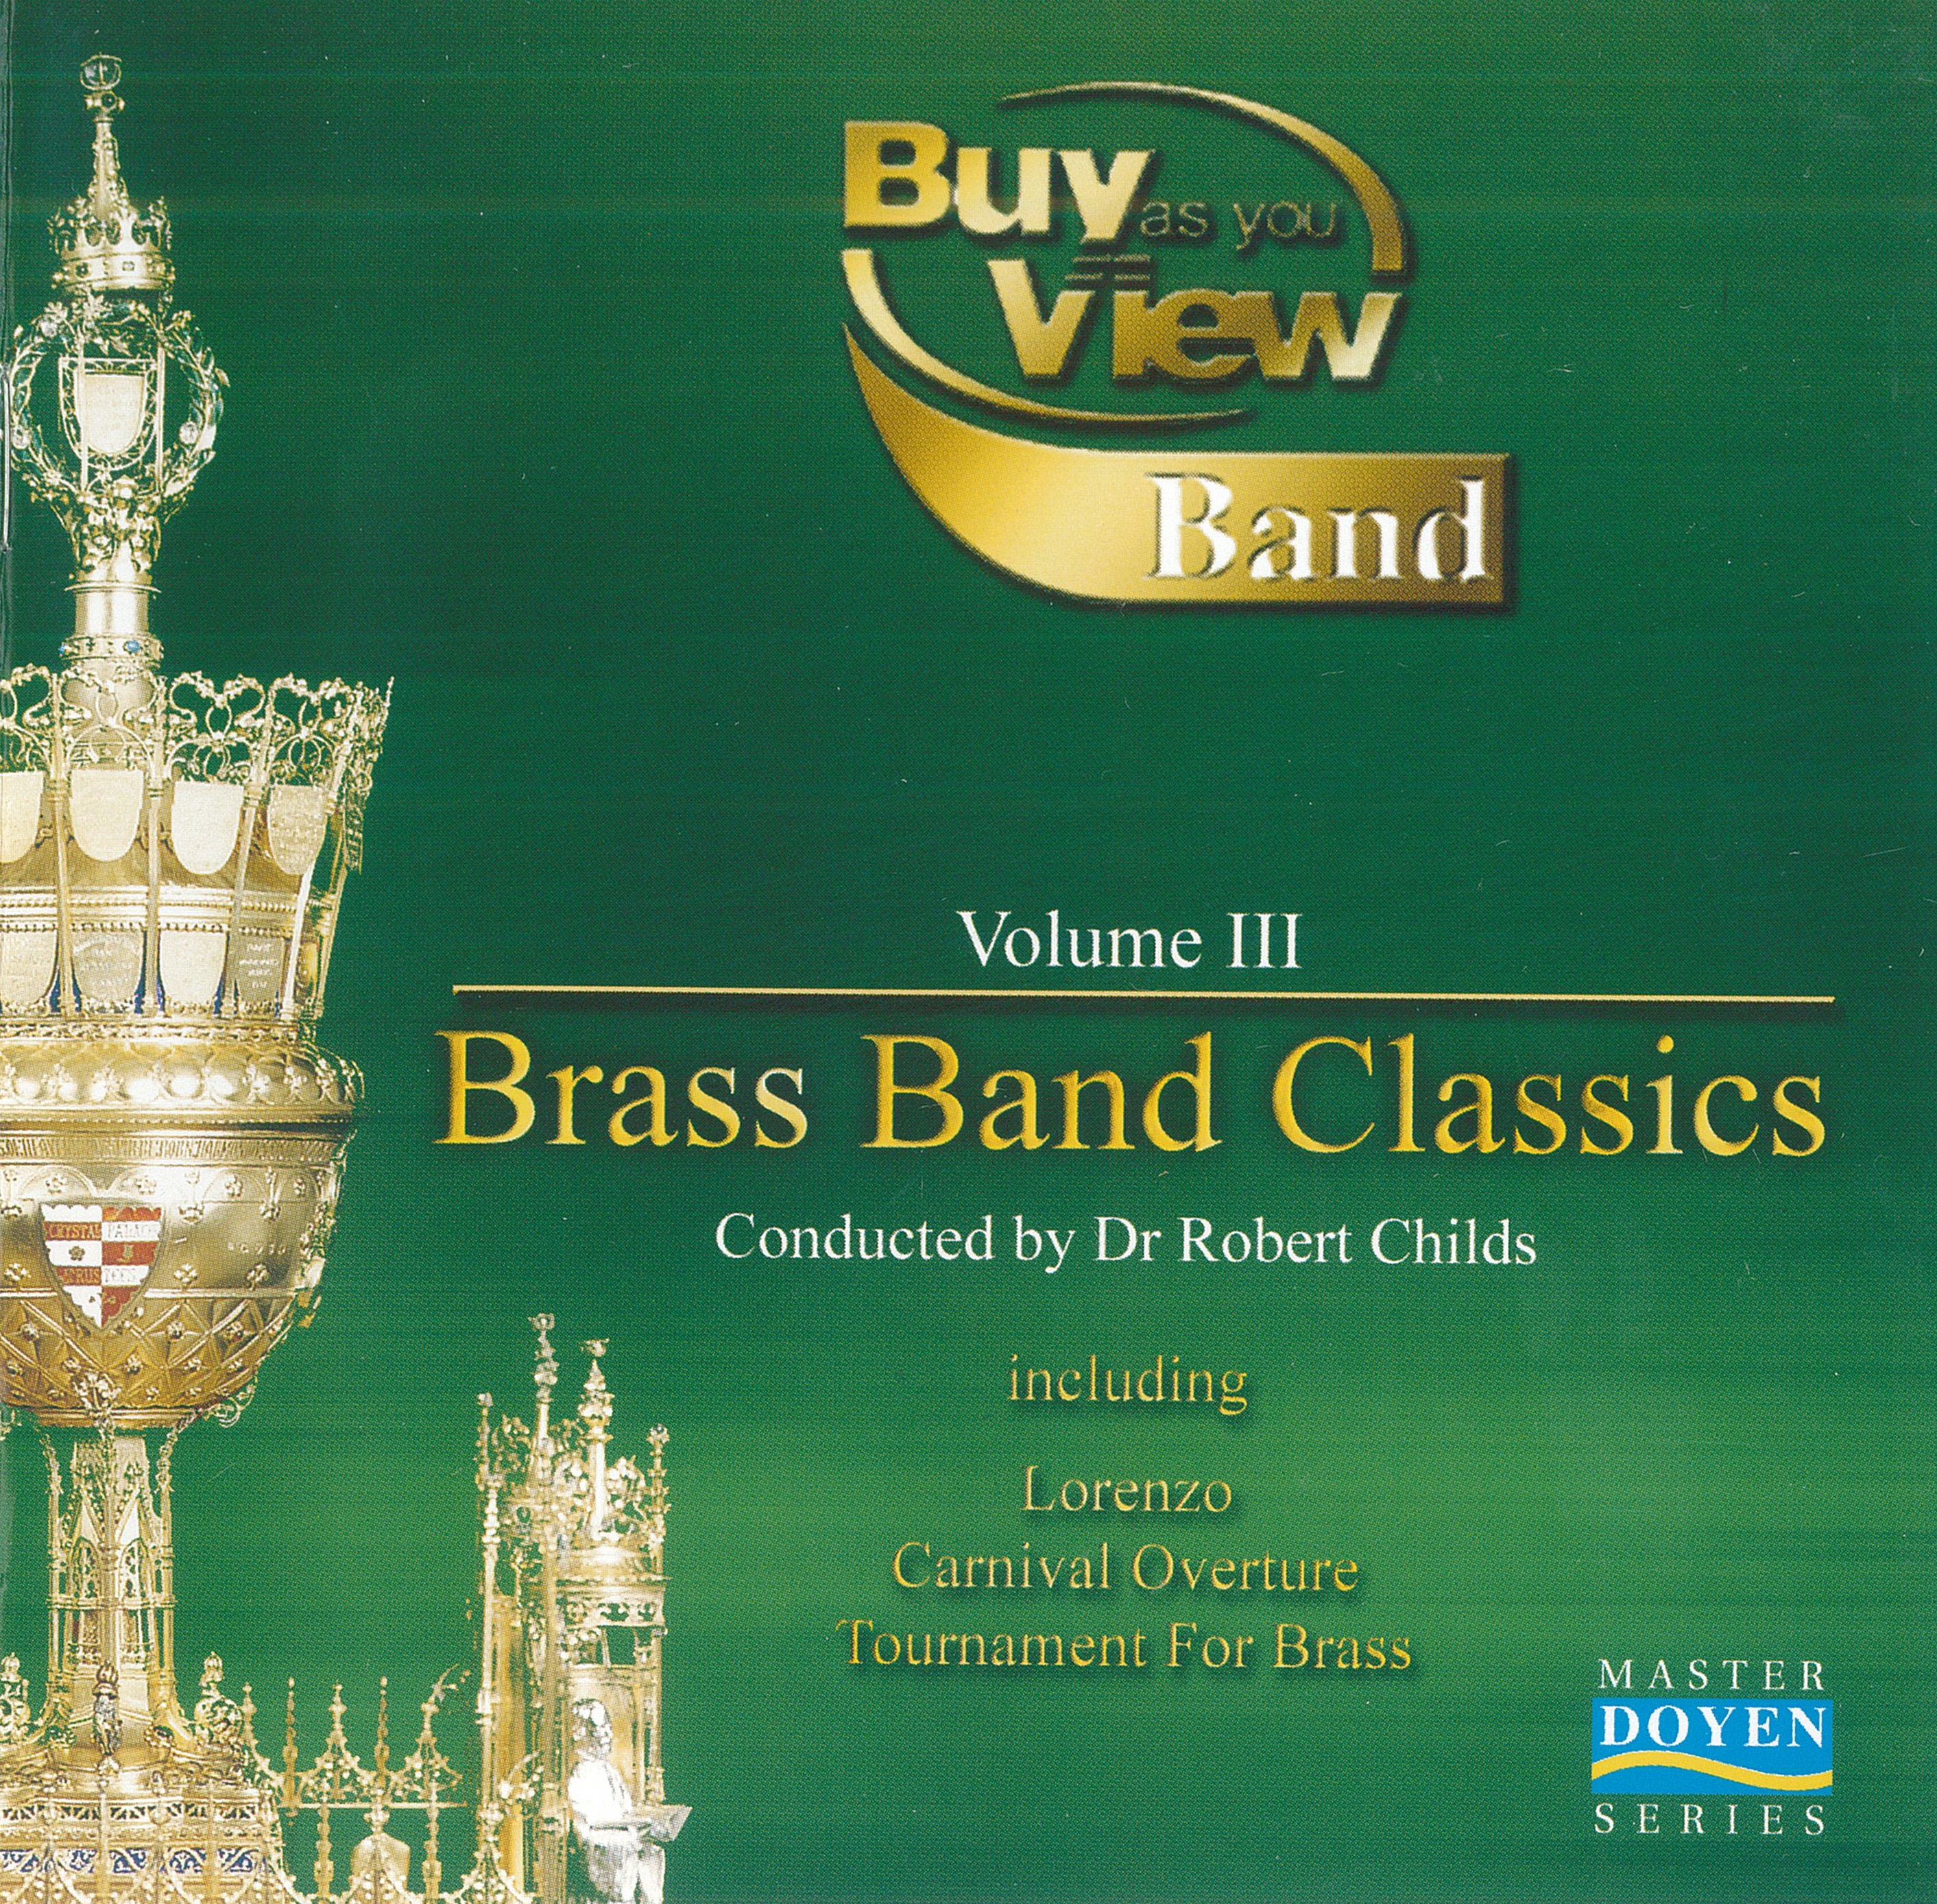 Brass Band Classics Vol. 3 - Download